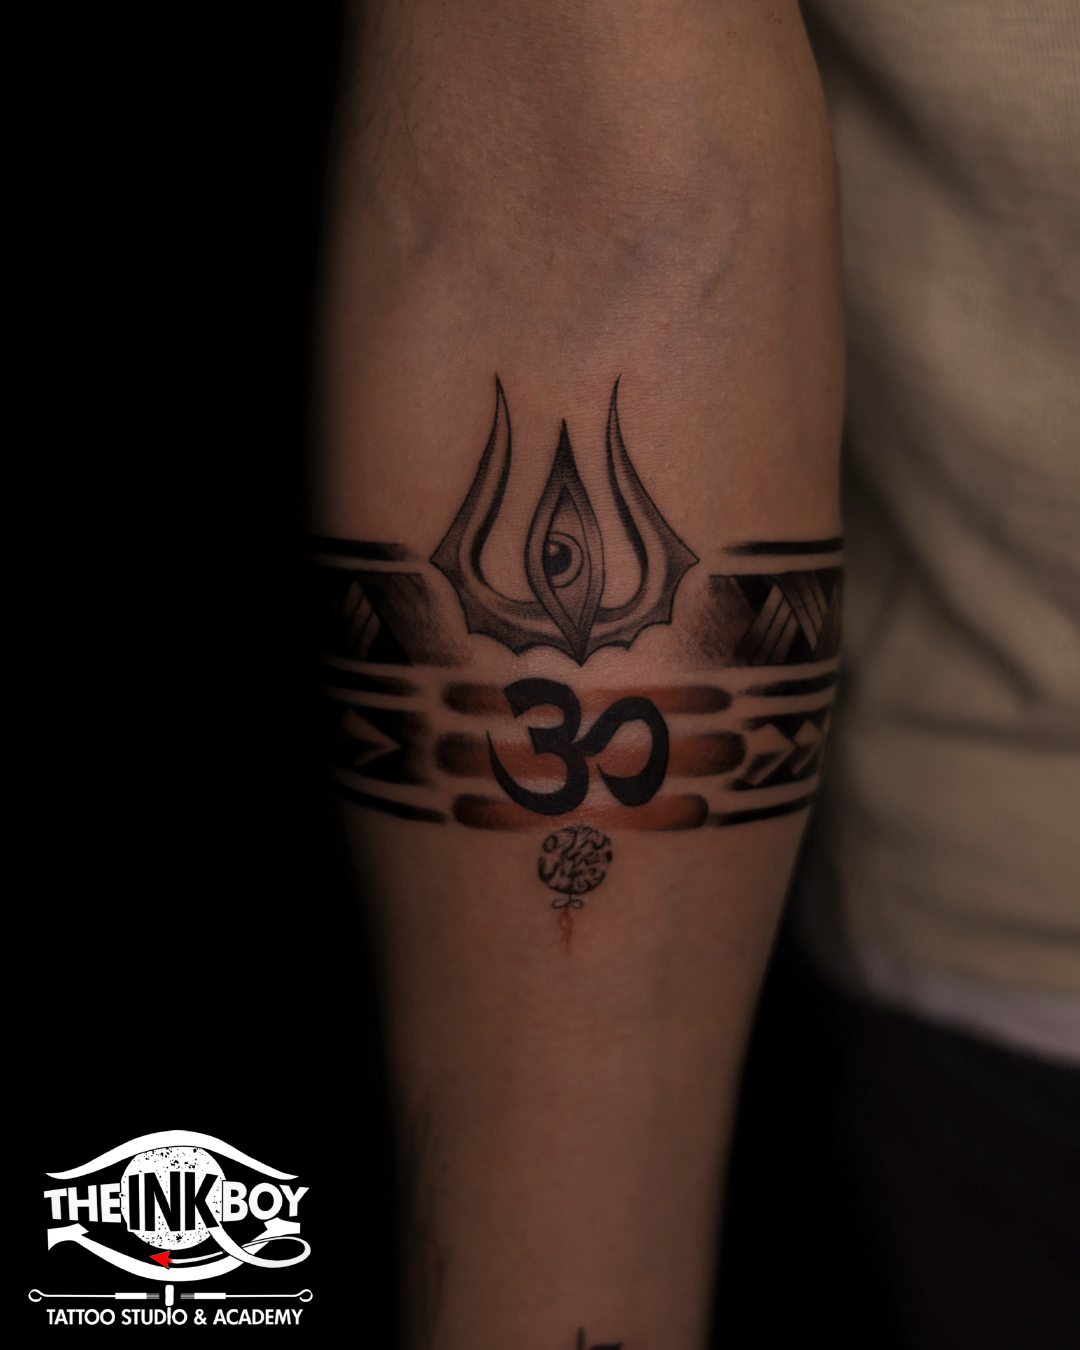 Tattoo uploaded by serhatunvertattooart • 🗻N A T U R E🗻 Band tattoo # tattoo #tattoos #tattooed #tattoodo #art #ink #inked #minimalist  #tattoowork #floraltattoo #moon tattoo #blactattoo #fineline #tattooartist  #tattoolove #dövme #dövmesanati ...